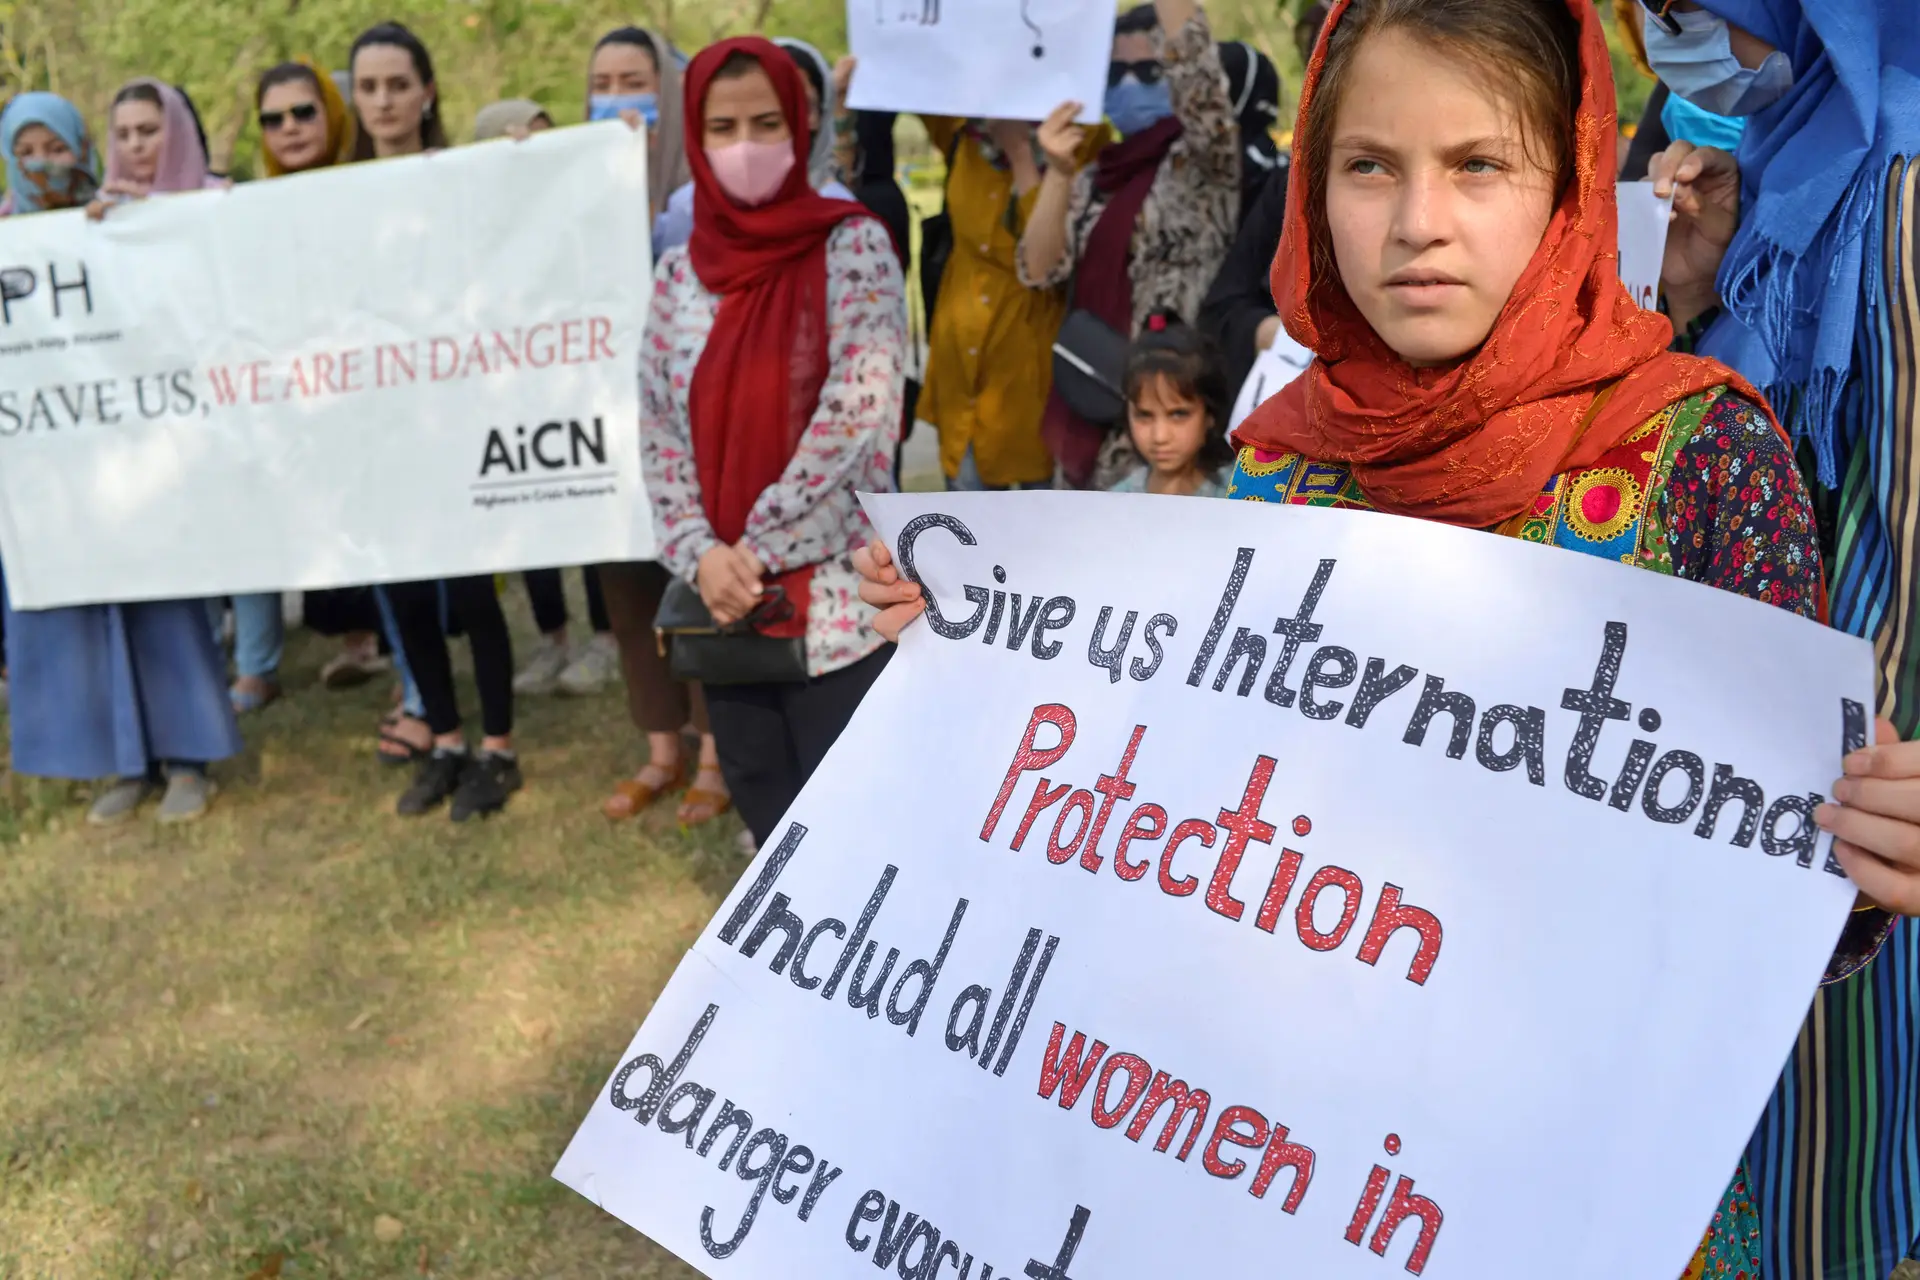 Afeganistão: Conselho de Segurança da ONU condena restrições dos talibãs às mulheres